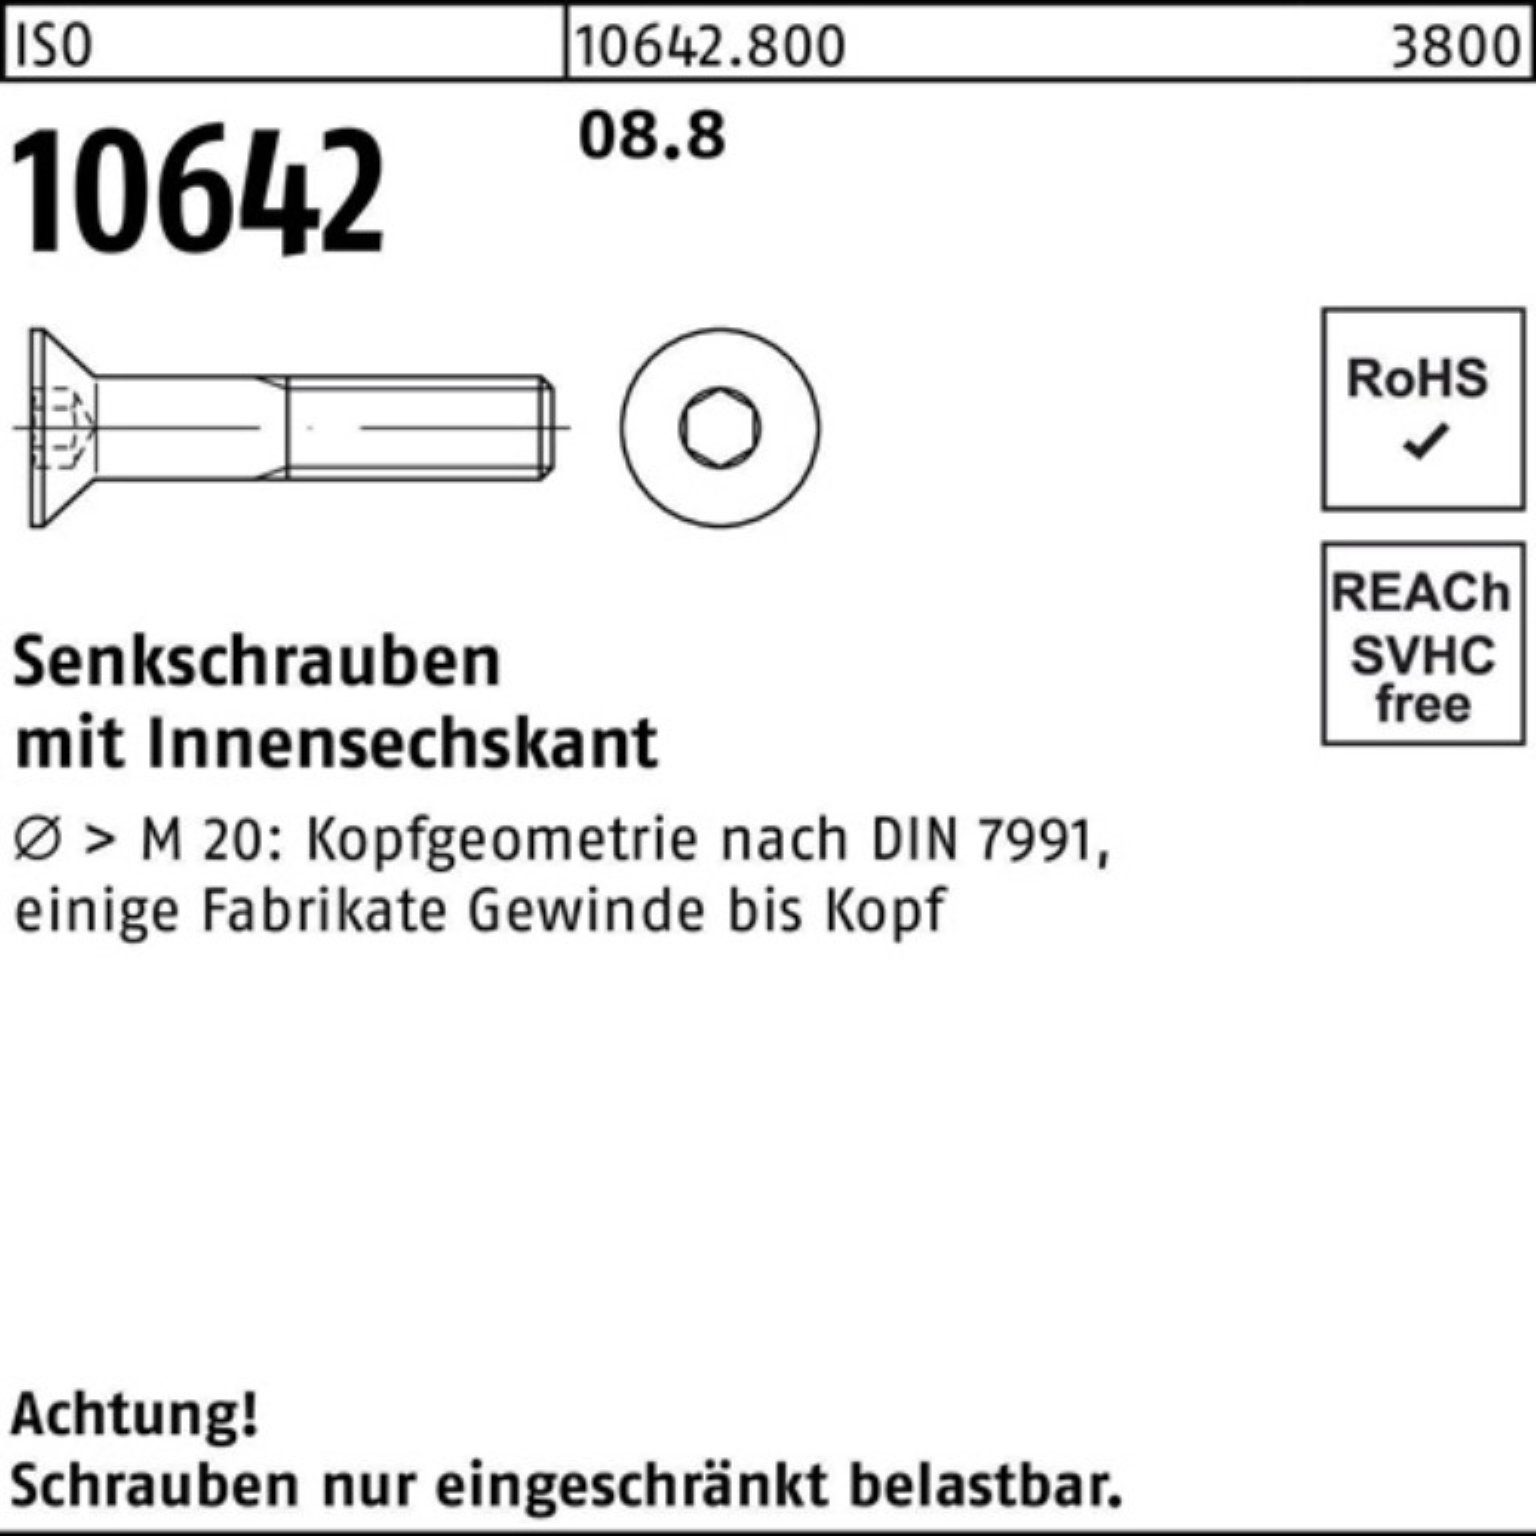 1 500er ISO Reyher 500 8.8 Innen-6kt M5x 10642 6 ISO Stück Pack Senkschraube Senkschraube